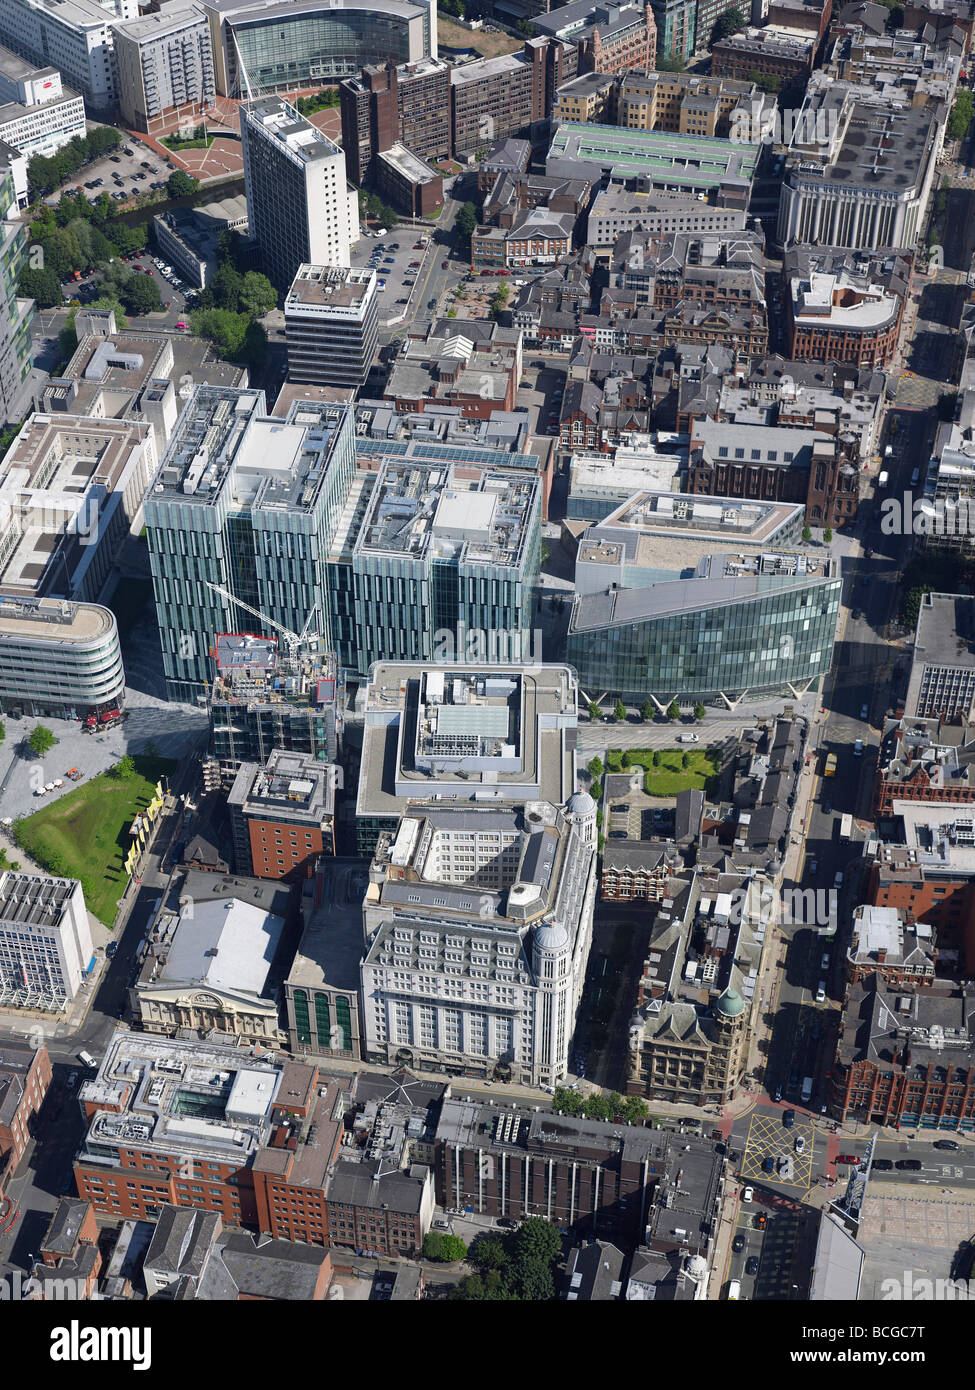 Il centro della città di Manchester, Quay Street e la zona business, dall'aria, luglio 2009, l'Inghilterra settentrionale, Foto Stock